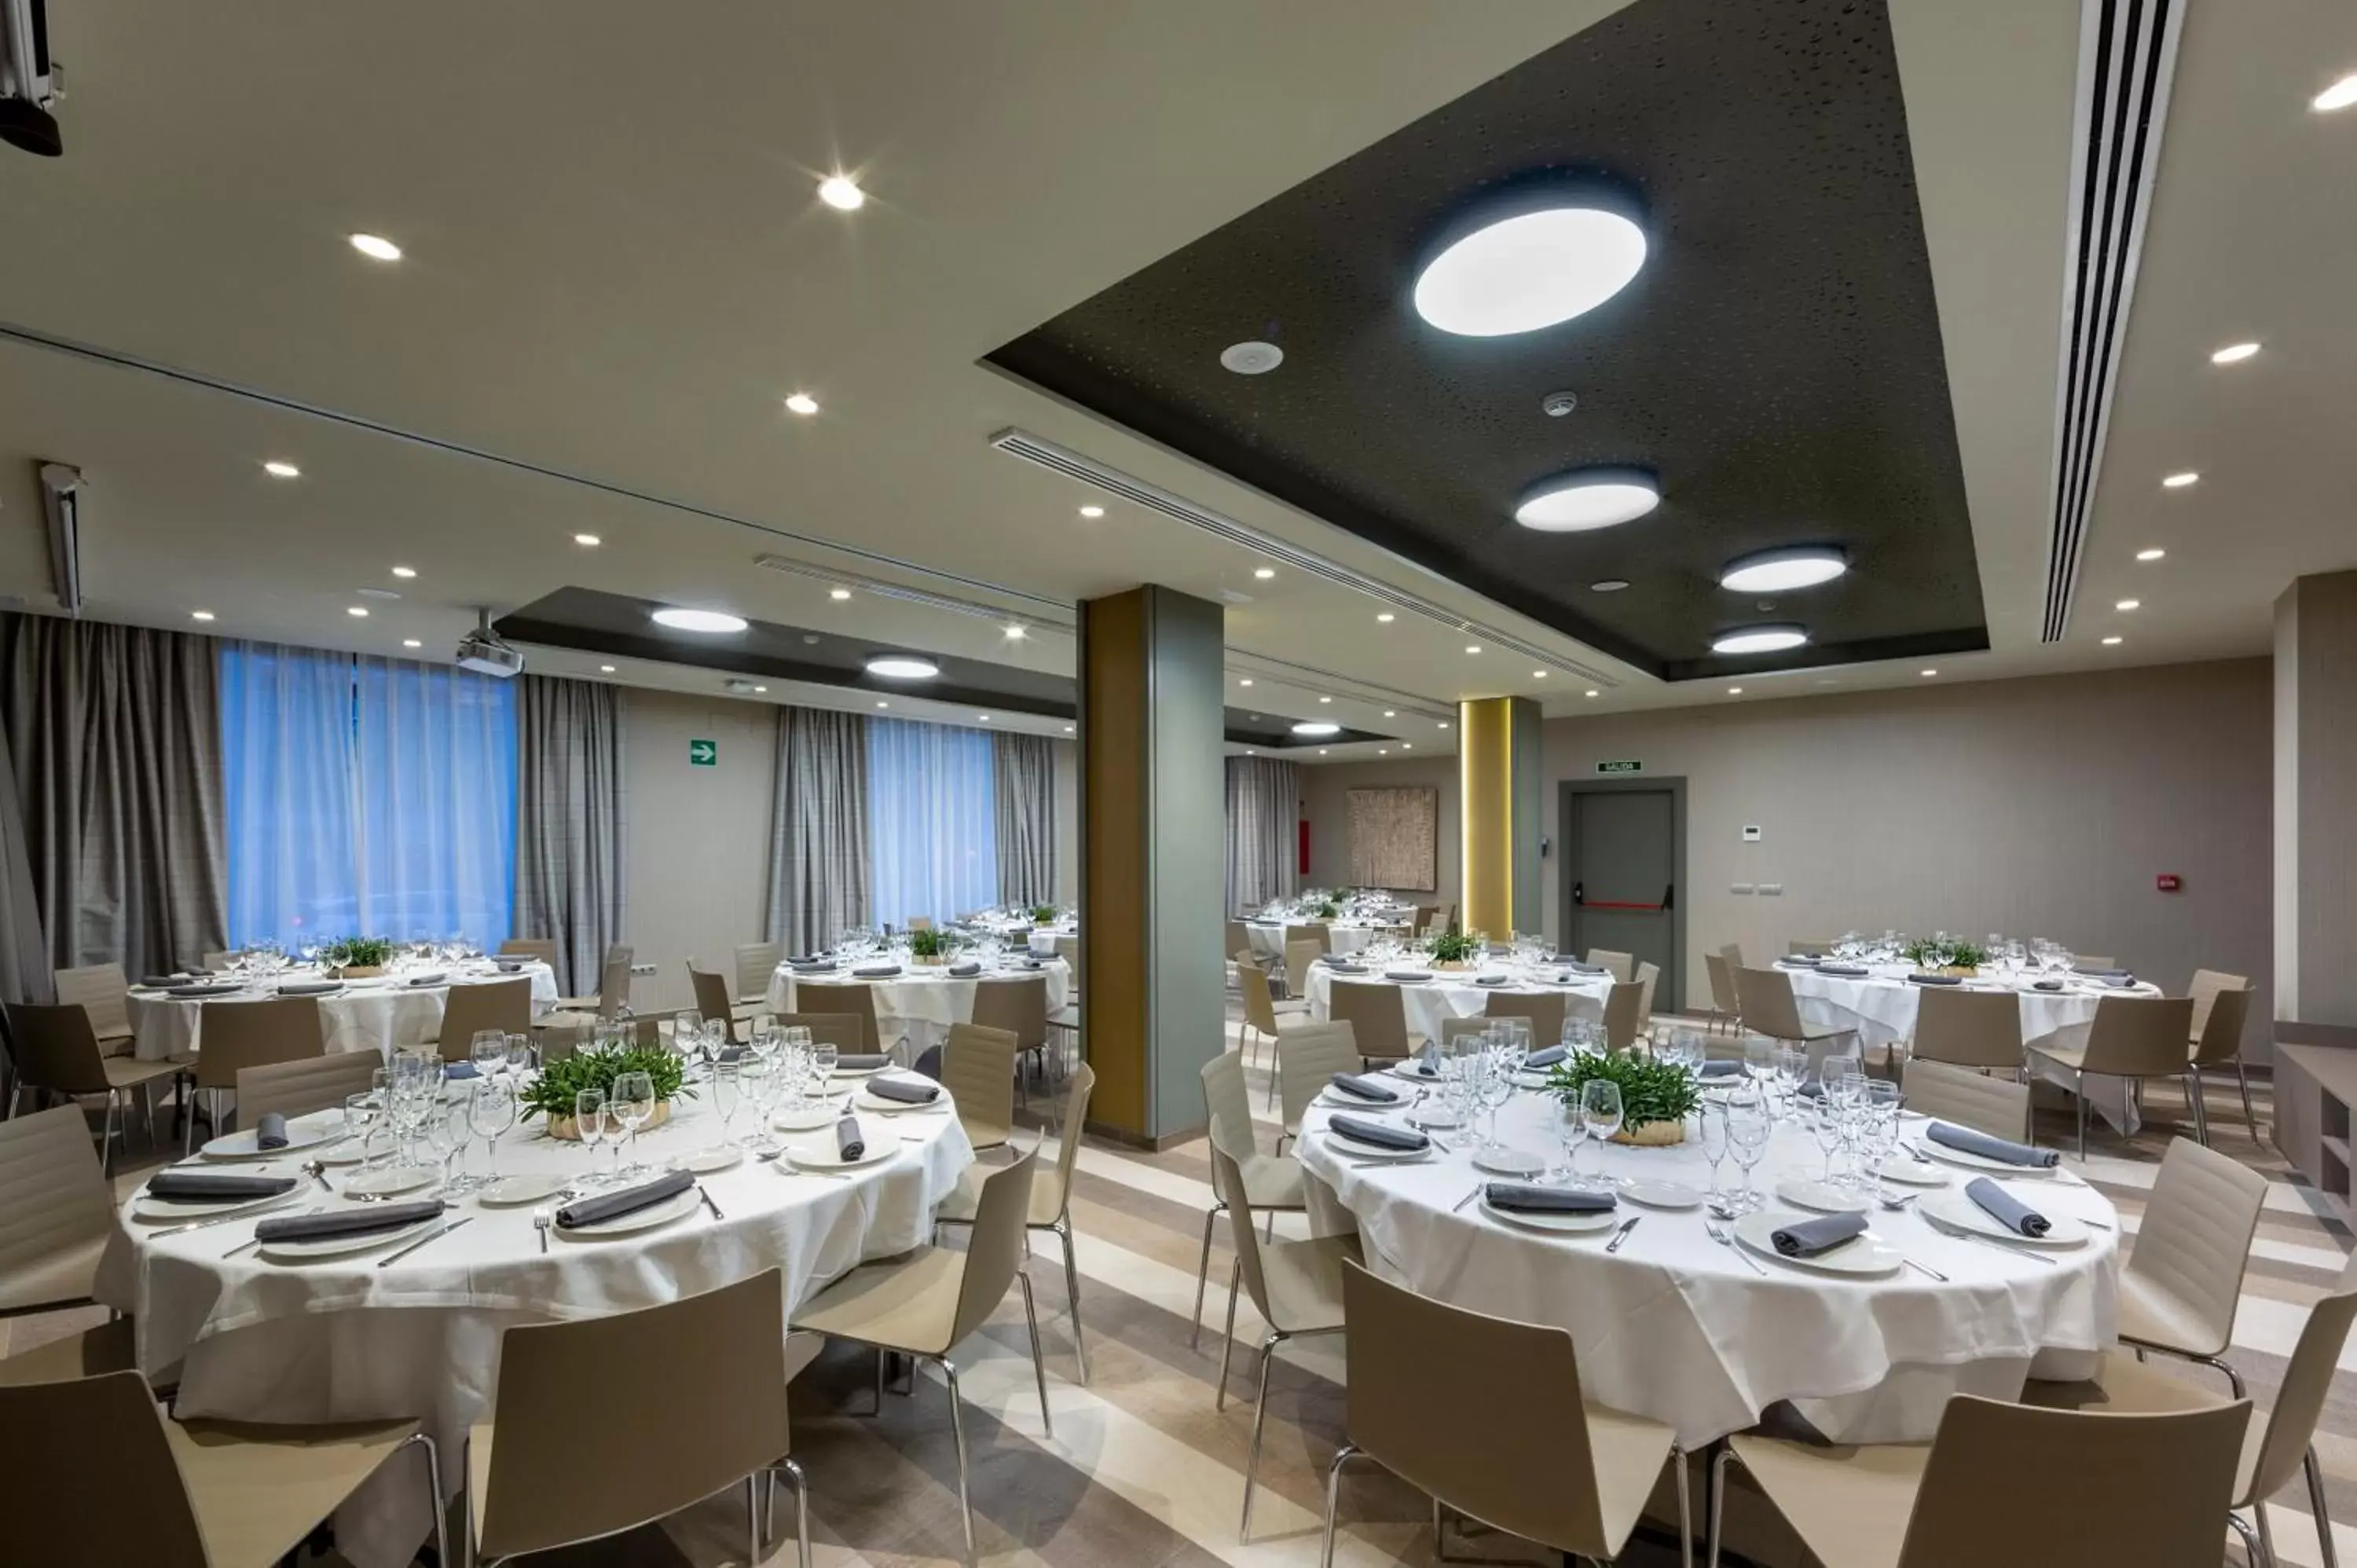 Banquet/Function facilities, Banquet Facilities in Catalonia Granada